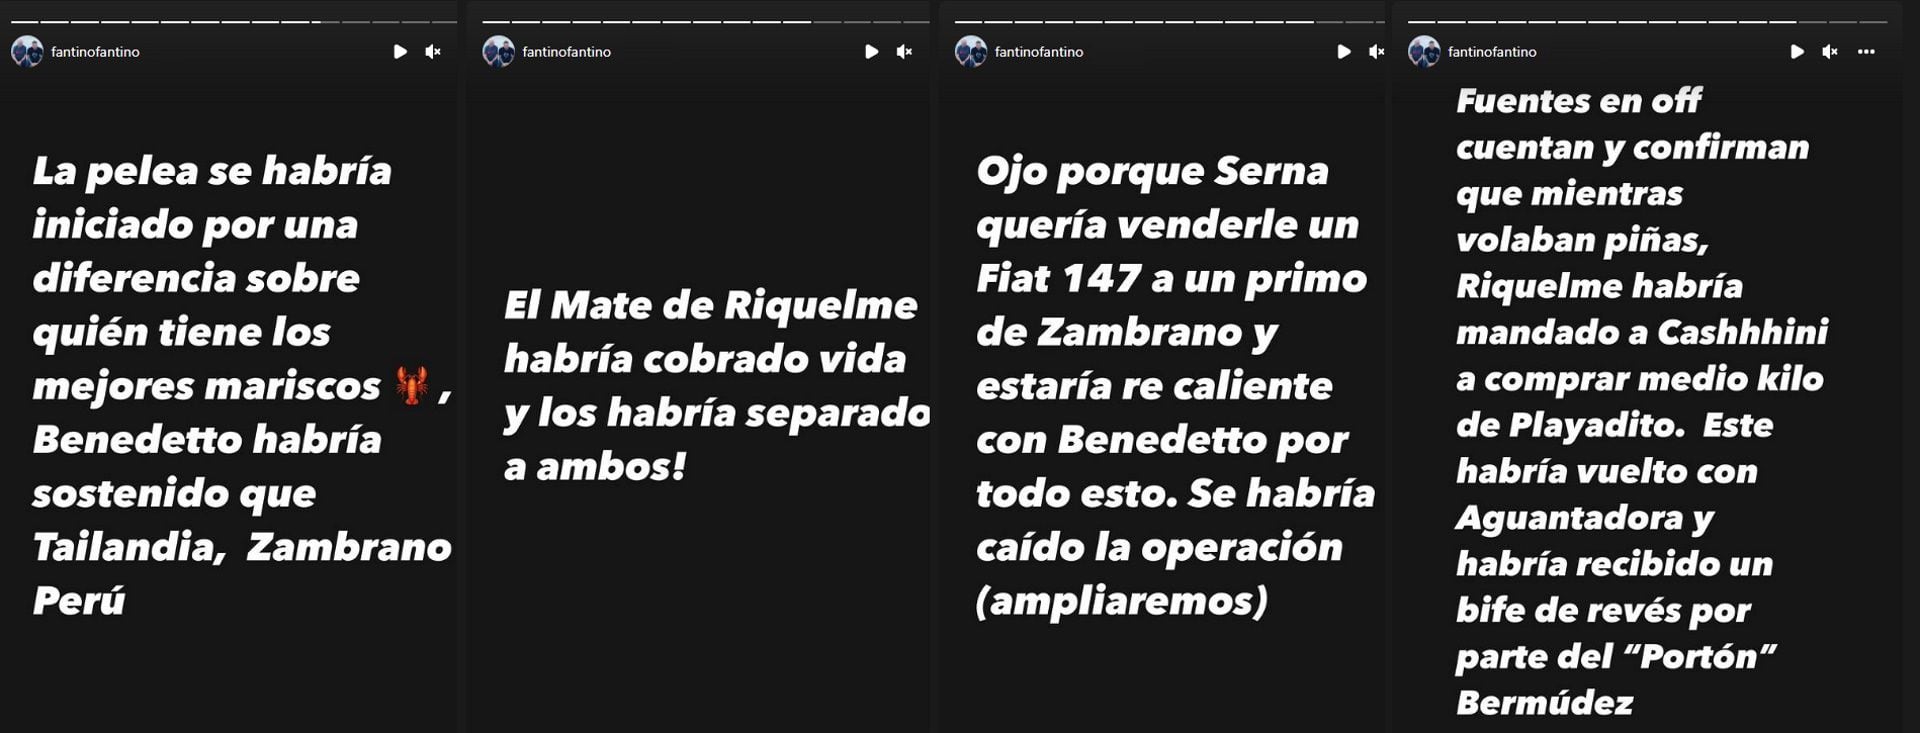 Las historias de Instagram de Alejandro Fantino por la pelea entre Benedetto y Zambrano (@FantinoFantino)